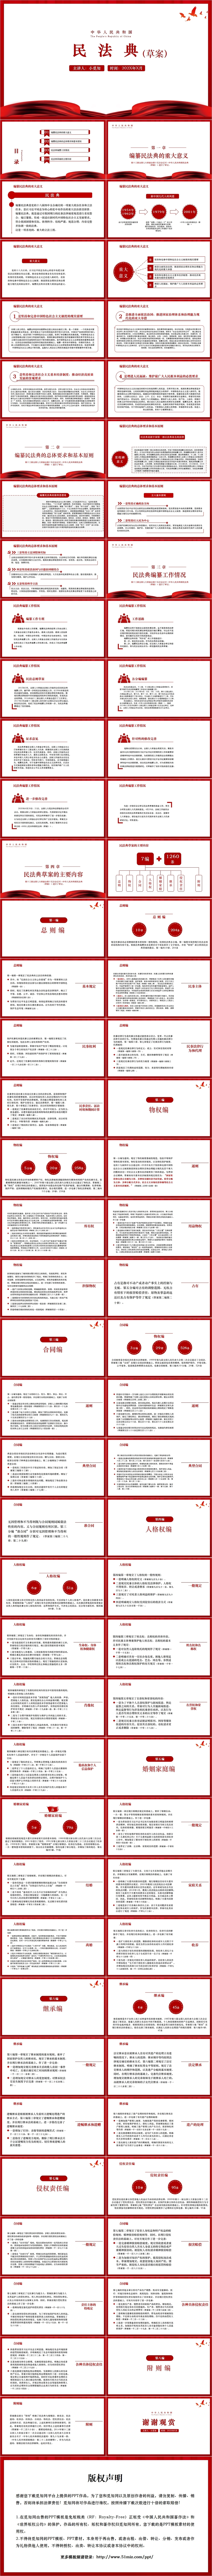 中华人民共和国民法典草案学习解读PPT模板